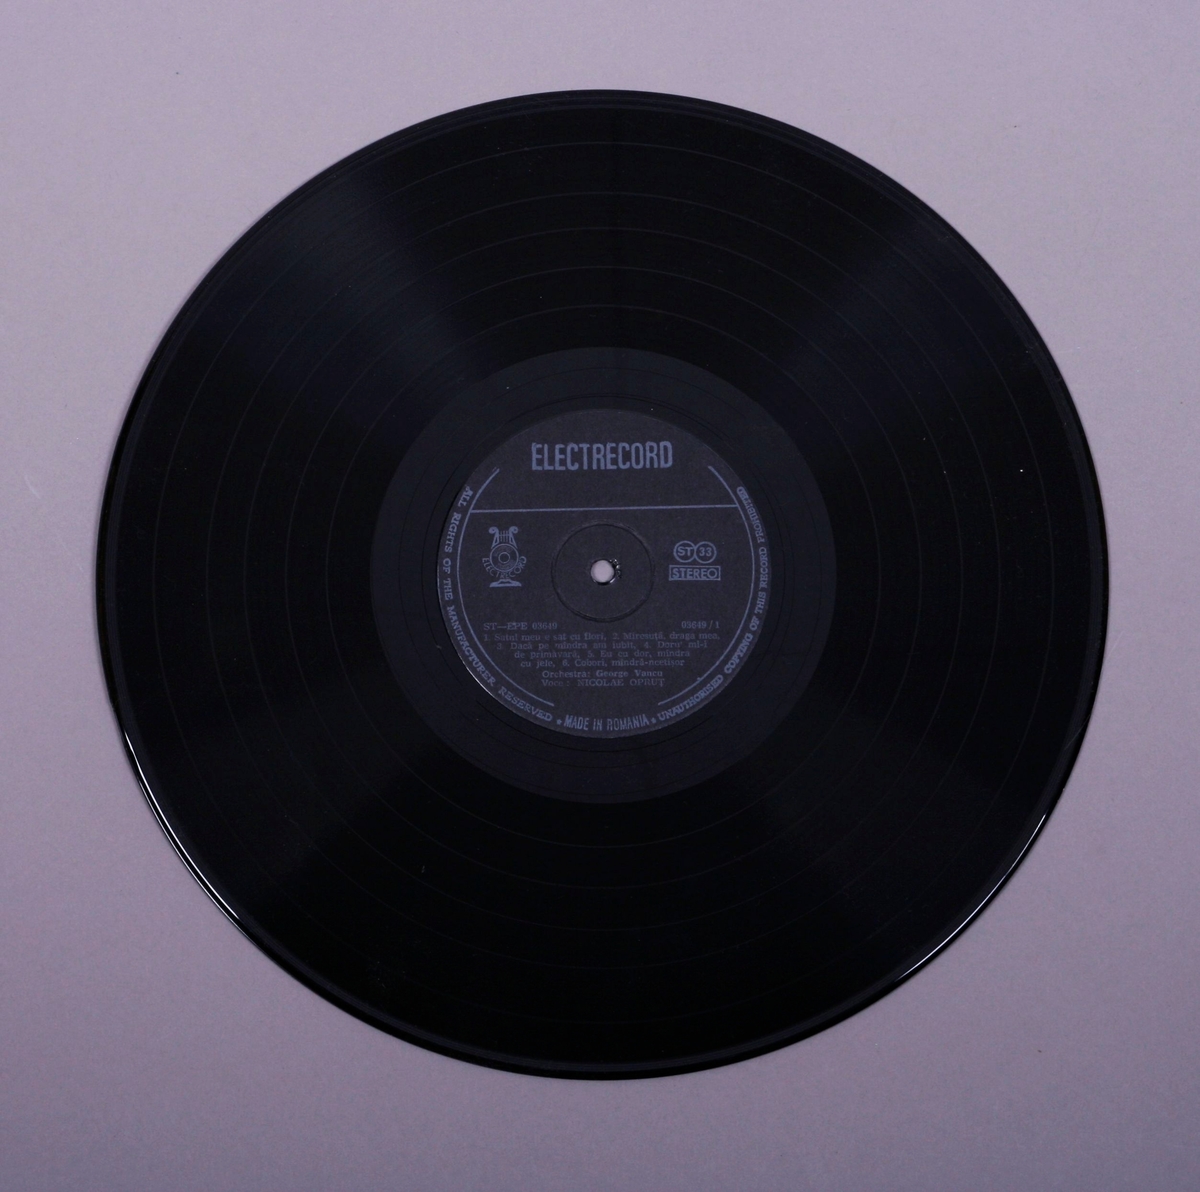 Grammofonplate i svart vinyl og plateomslag i papir. Plata ligger i en plastlomme.